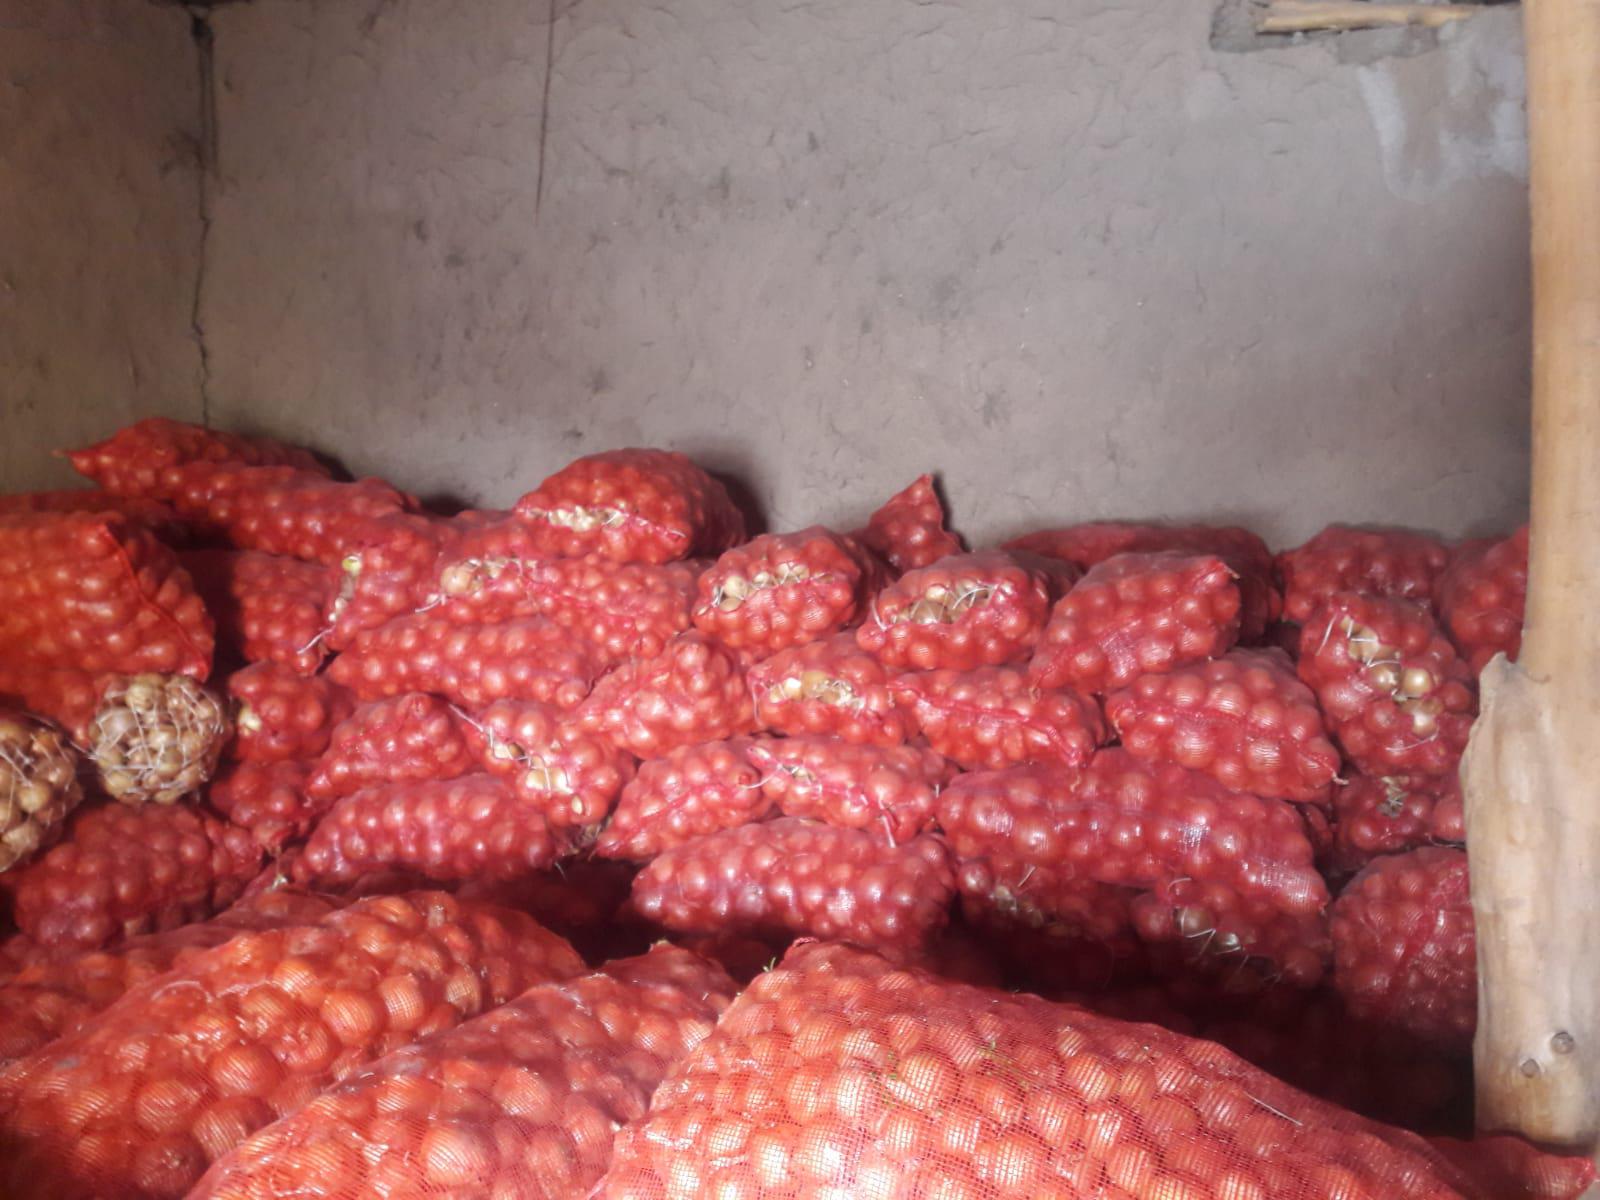 Kuru Soğan - Üretici Erdem Gülönü 1200 tl fiyat ile 20 kilogram viktorya çeşidi kuru soğan satmak istiyor